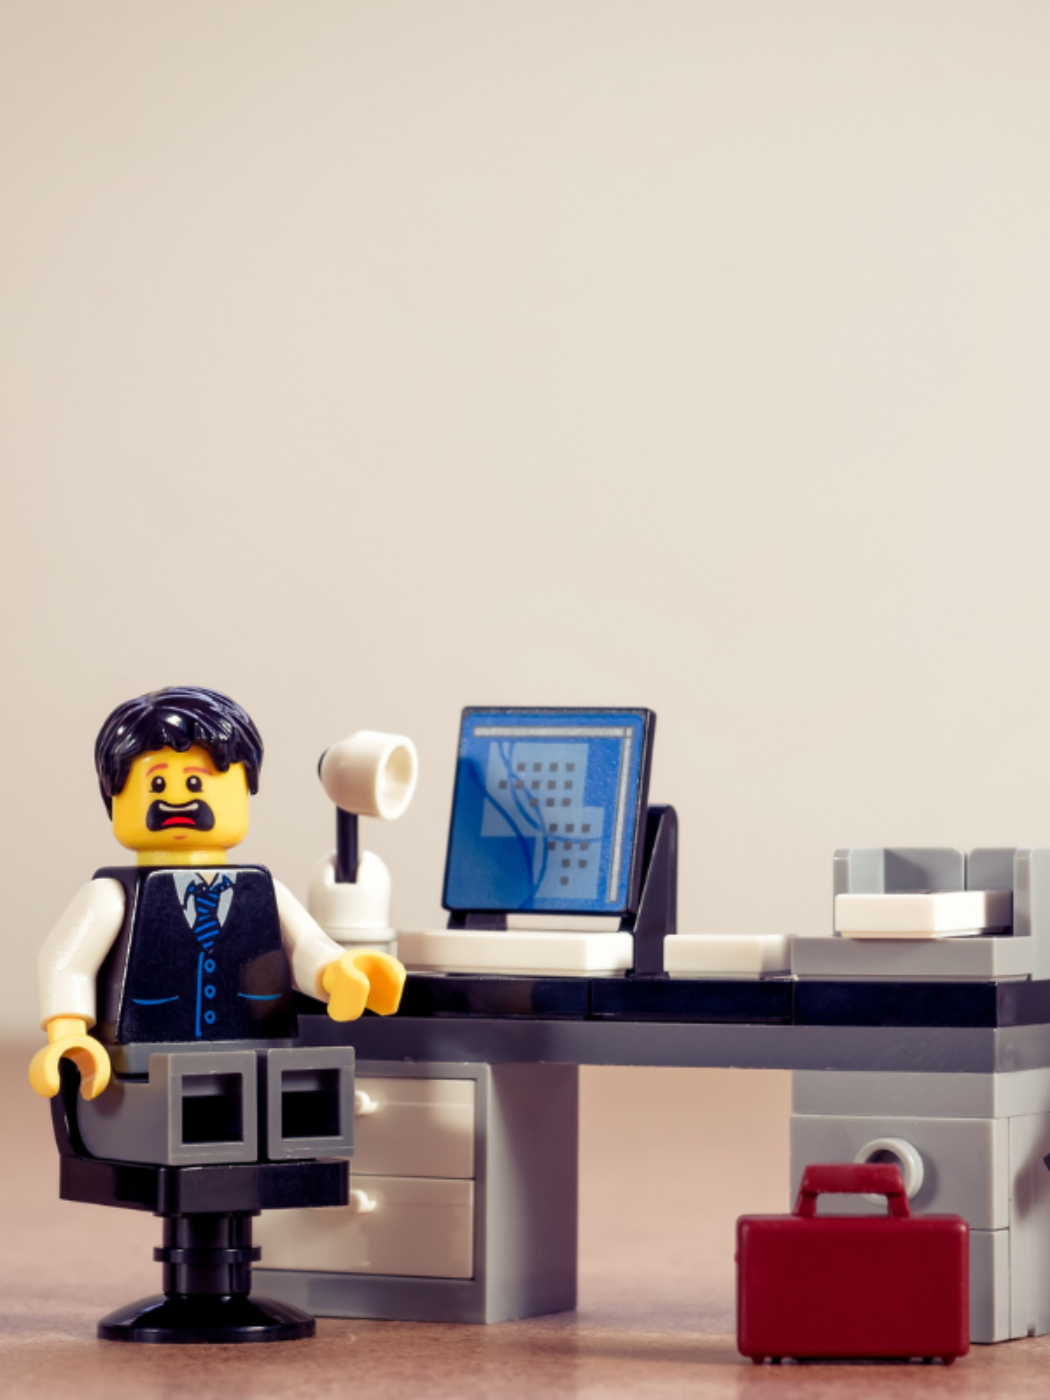 Die Lego Figur eines Beamten sitzt in einem Lego Büro mit entsetzen Gesichtsausdruck